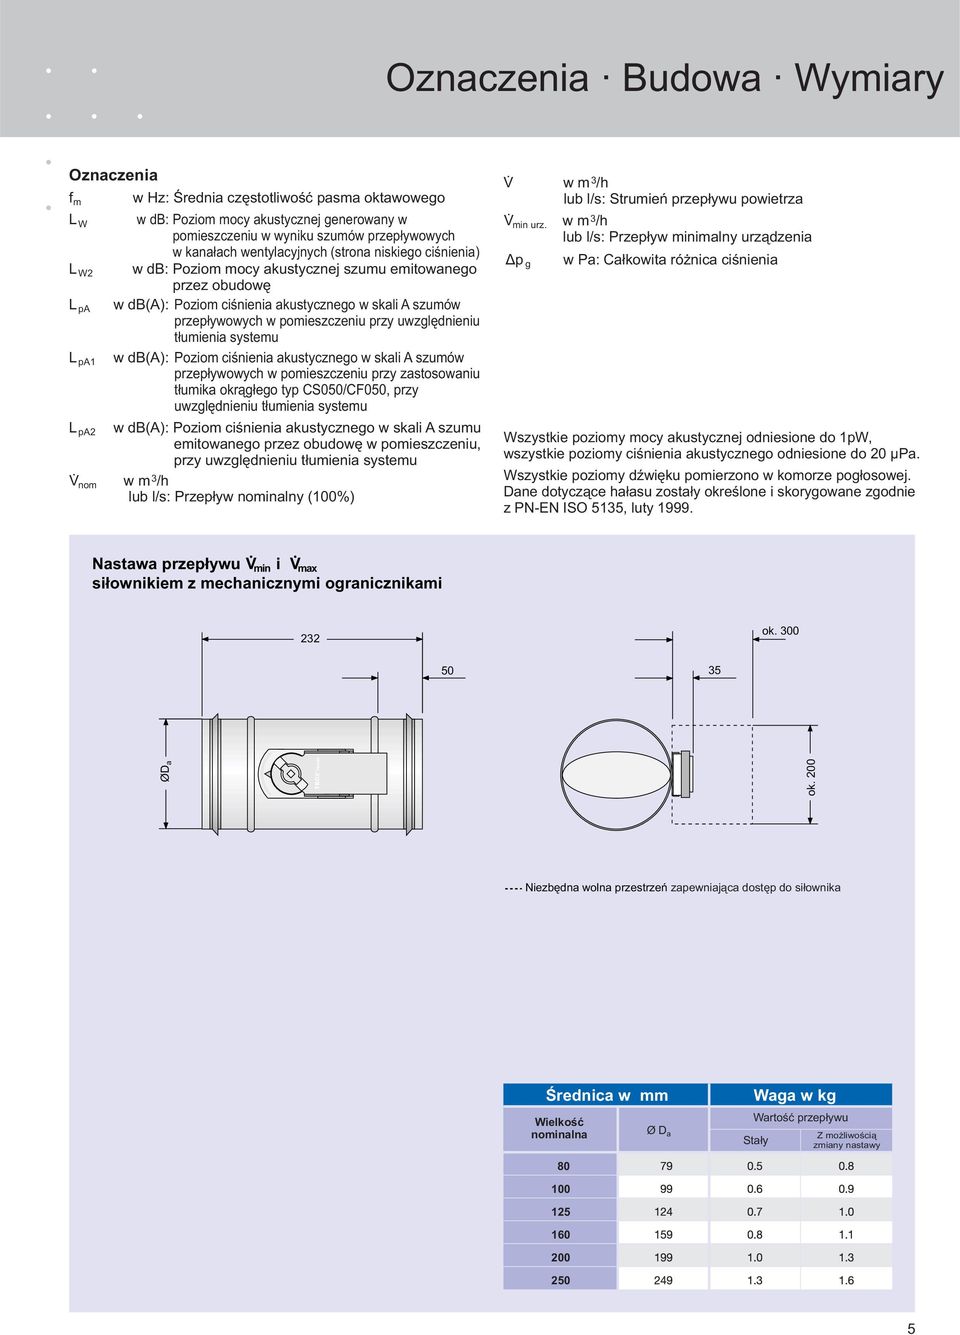 przy uwzględnieniu tłumienia systemu w db(a): Poziom ciśnienia akustycznego w skali A szumów przepływowych w pomieszczeniu przy zastosowaniu tłumika okrągłego typ CS050/CF050, przy uwzględnieniu